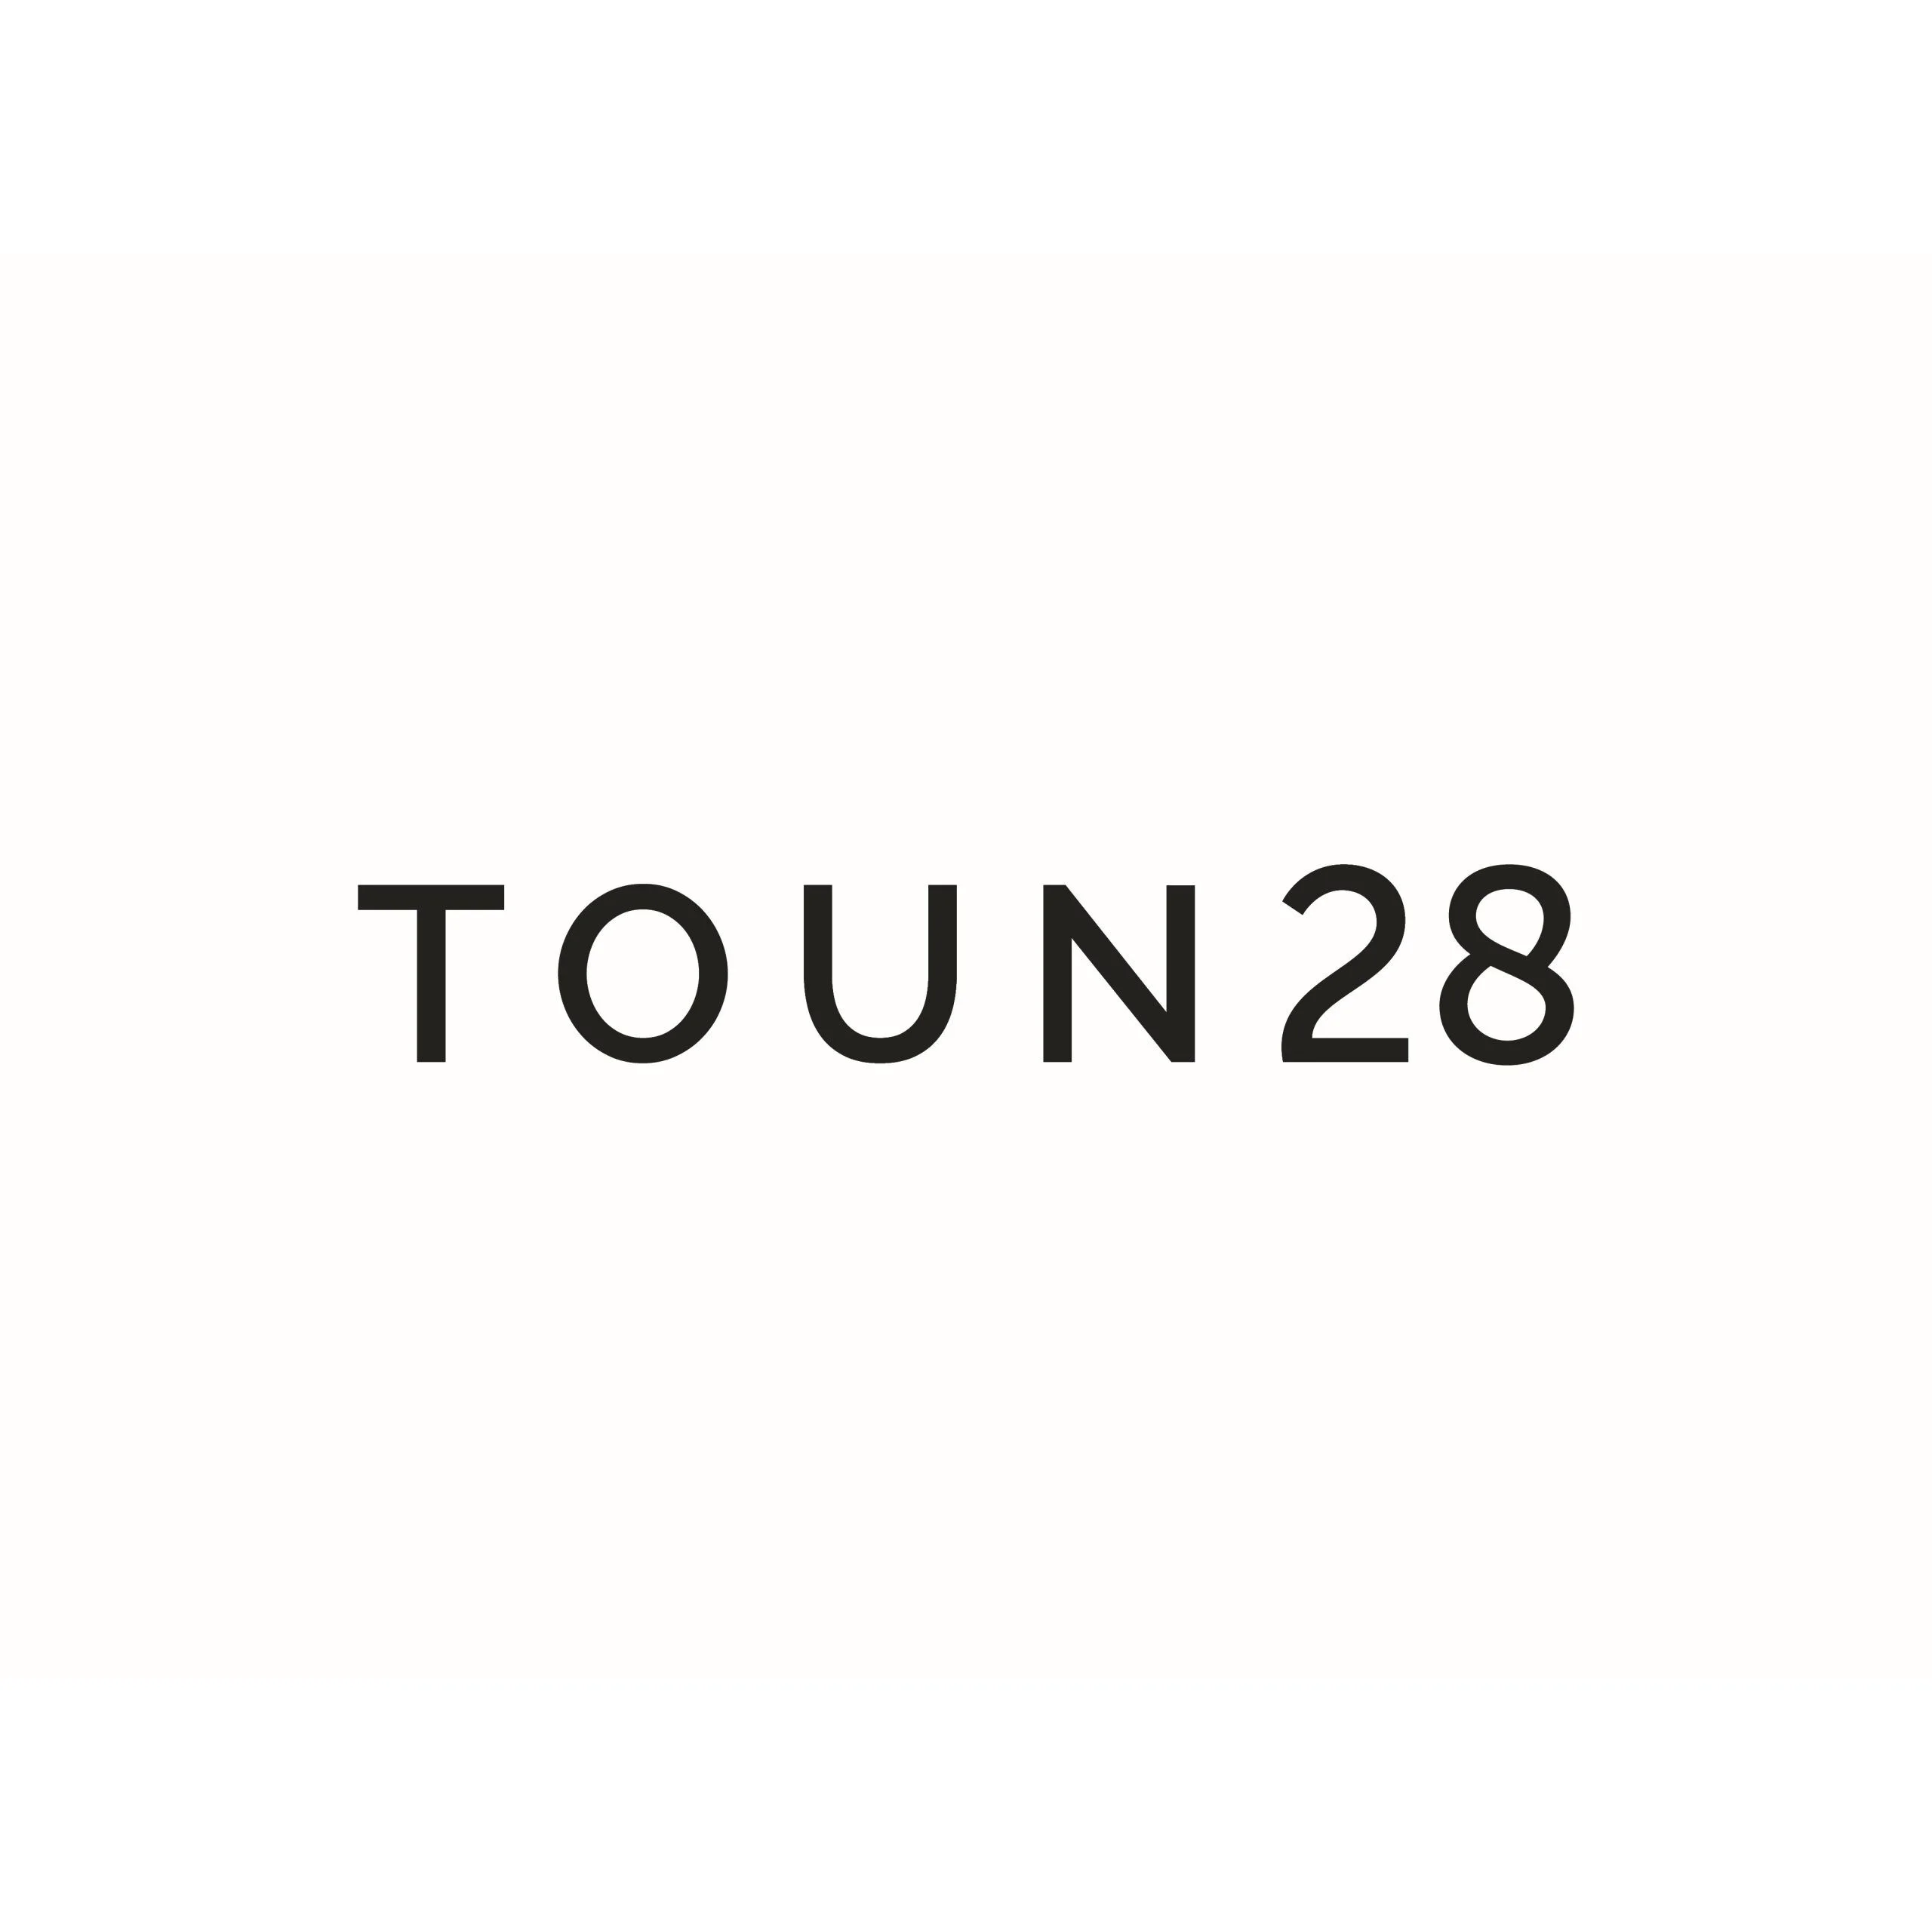 Toun 28 logo